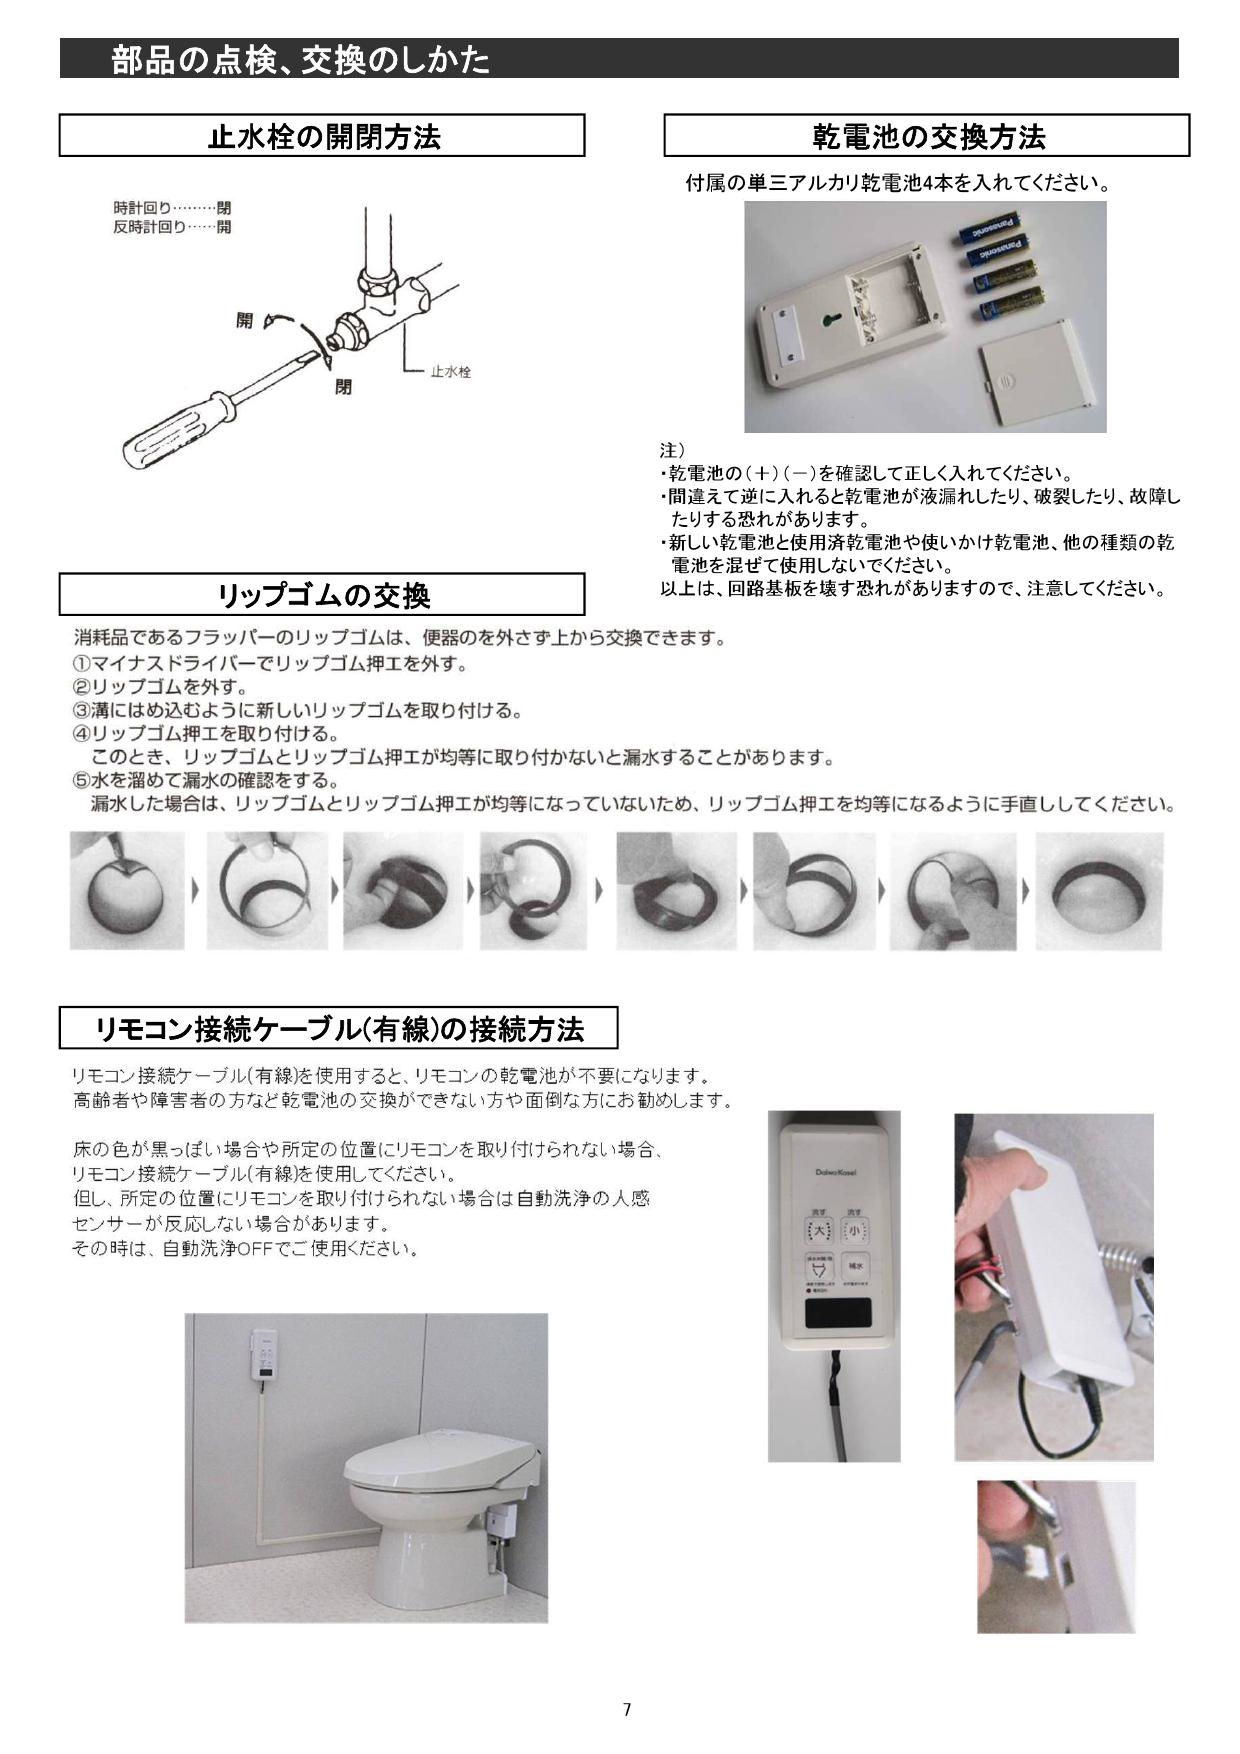 簡易水洗便器 簡易水洗トイレ バランス式開閉弁タイプ F8 電磁バルブ式 ...